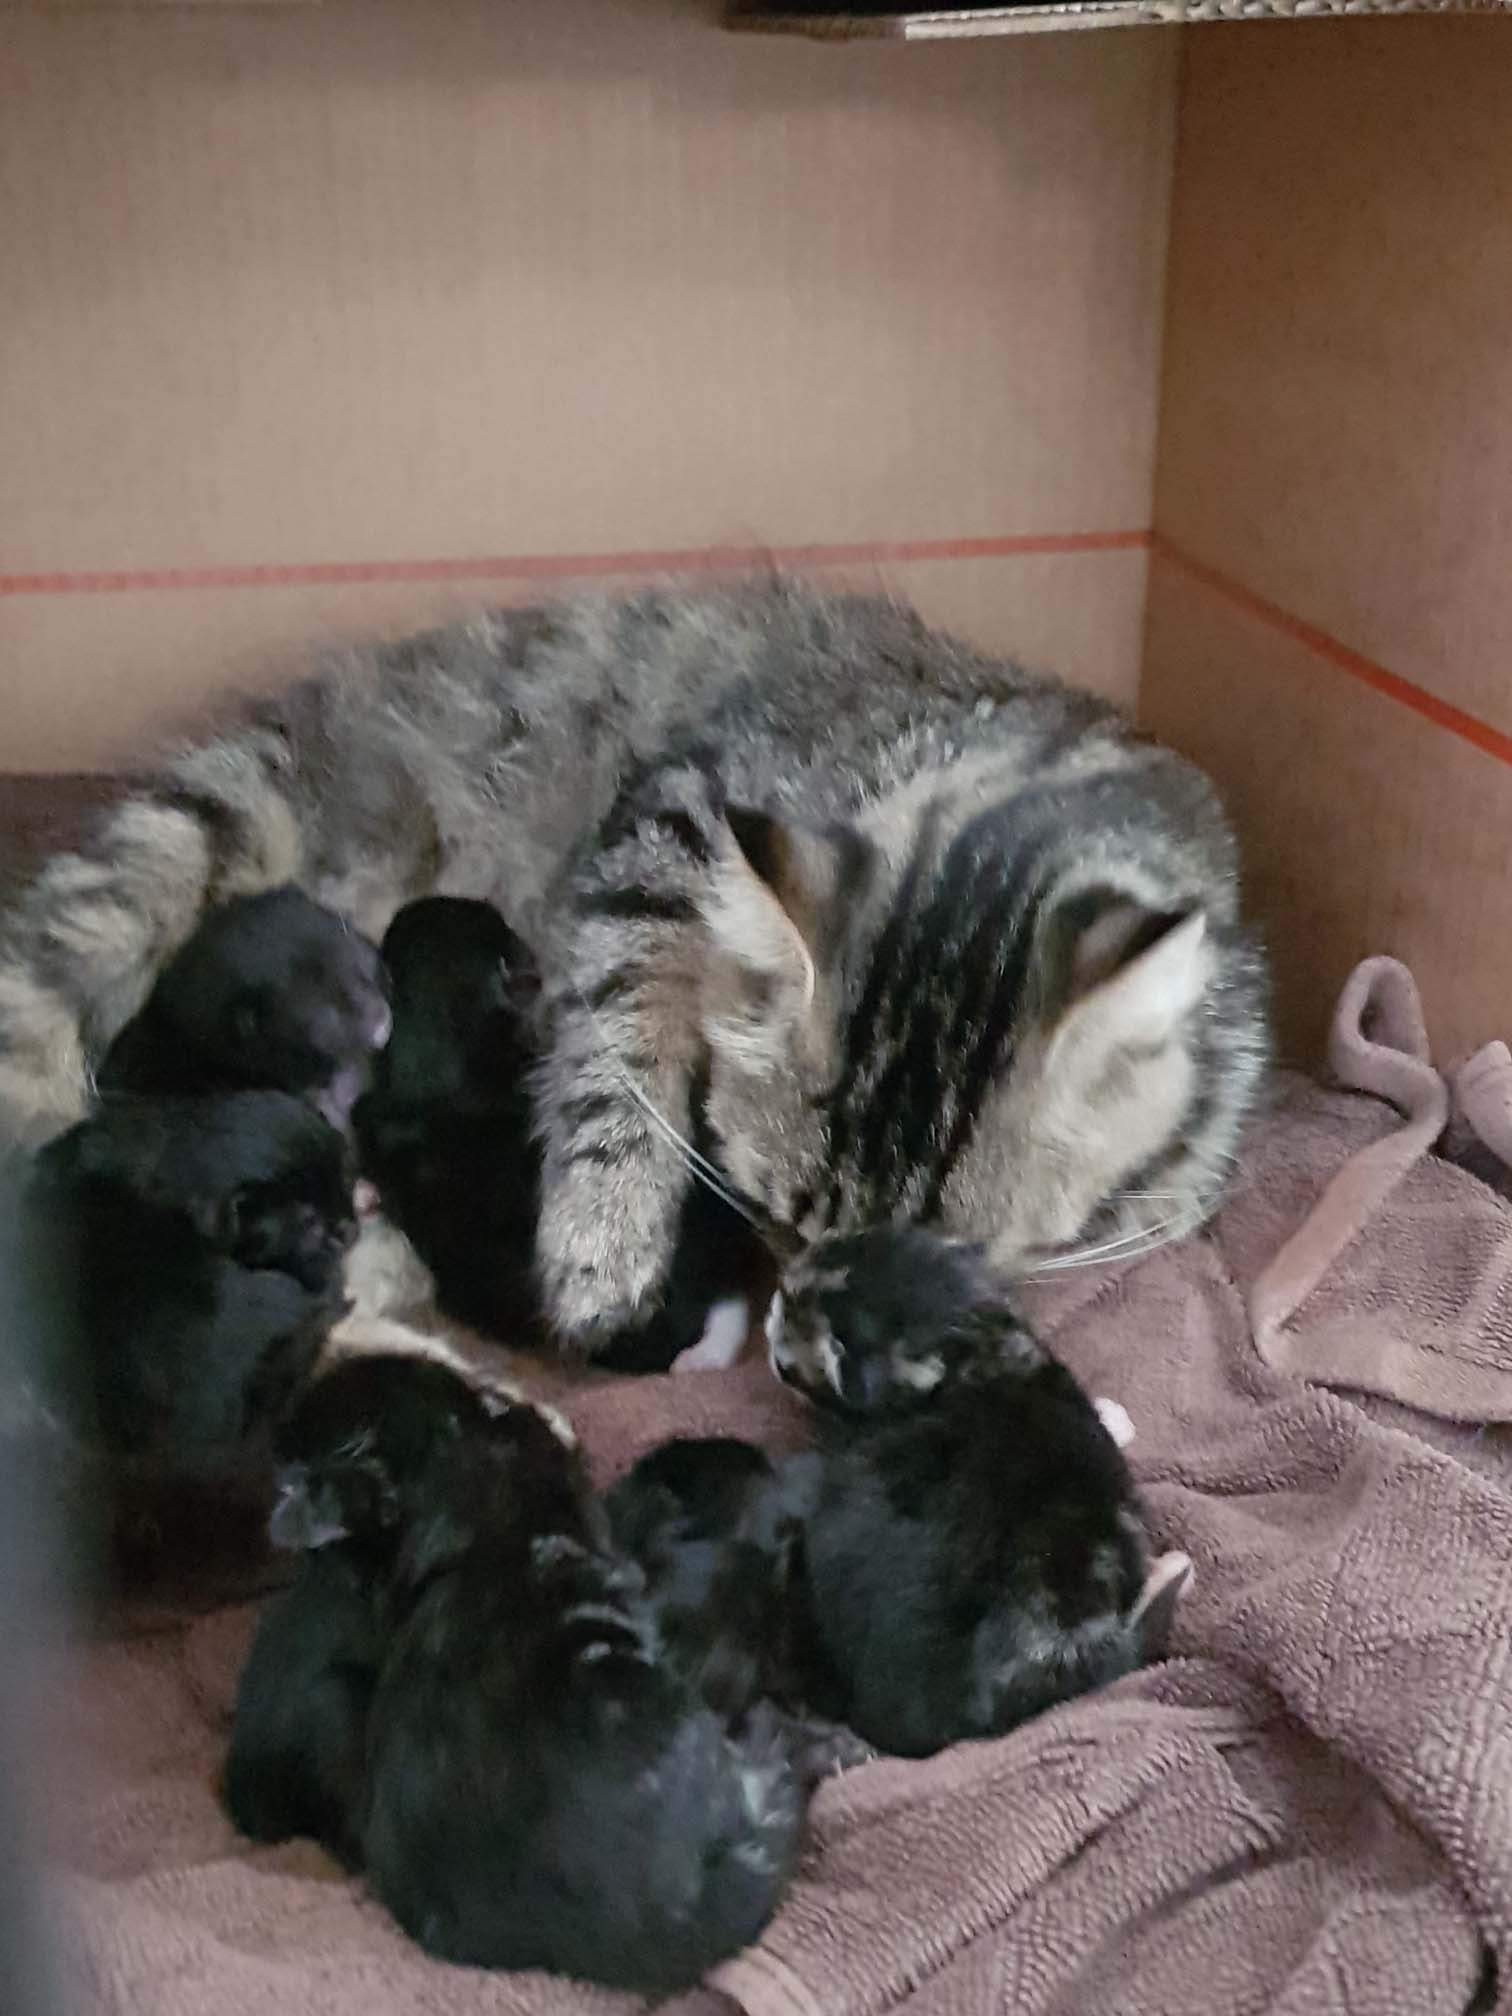 Stella and her half dozen